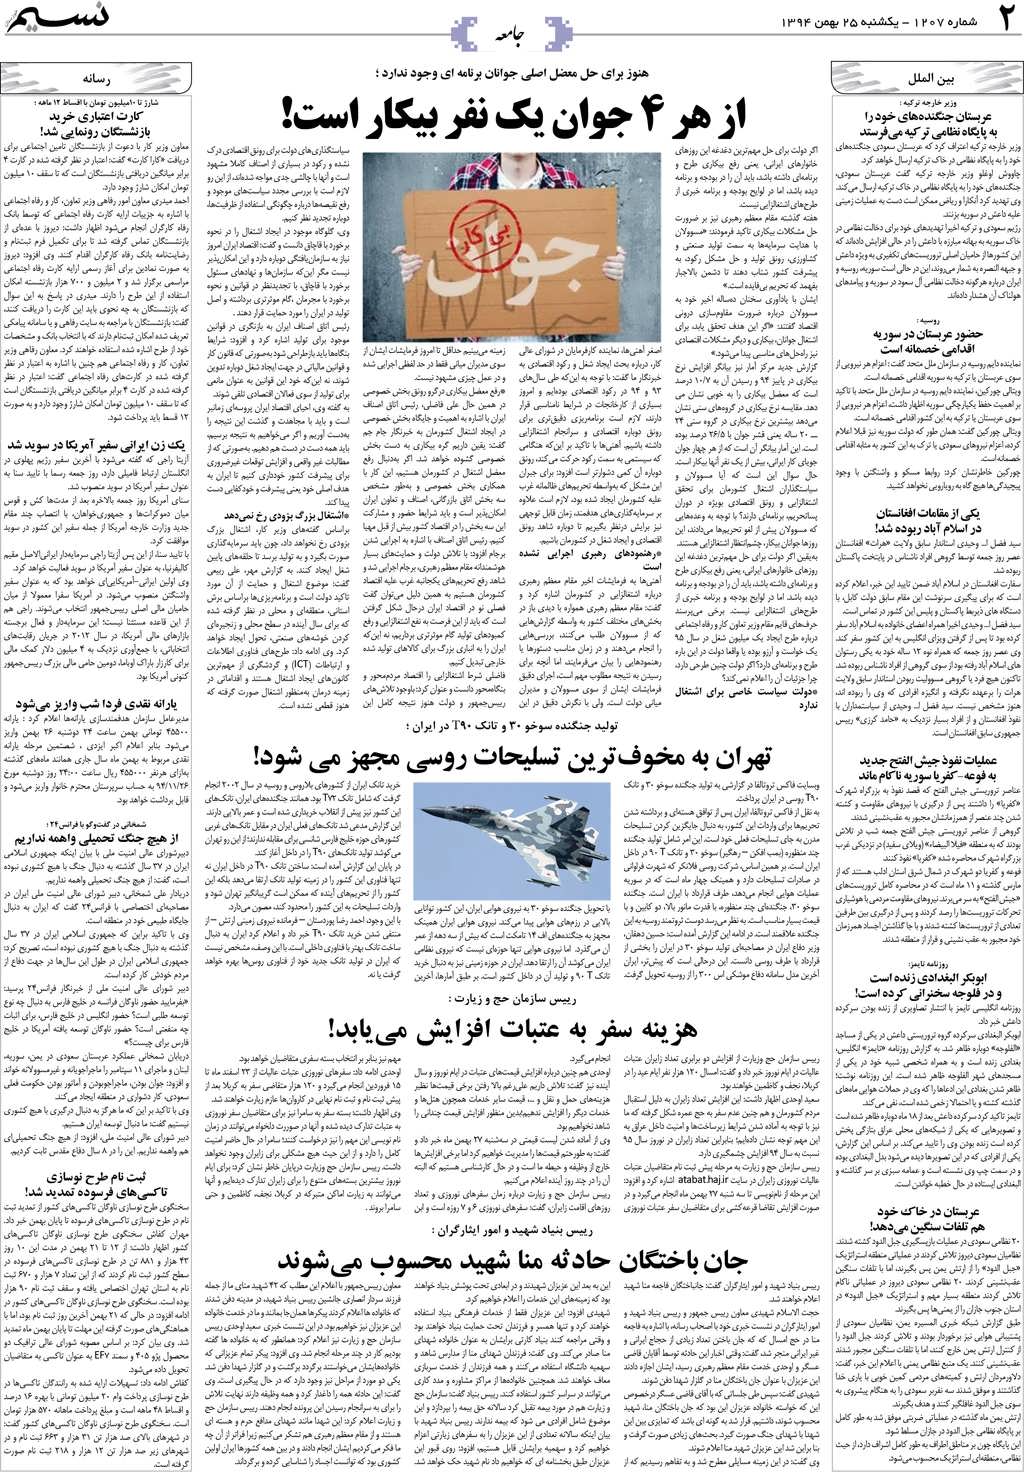 صفحه جامعه روزنامه نسیم شماره 1207